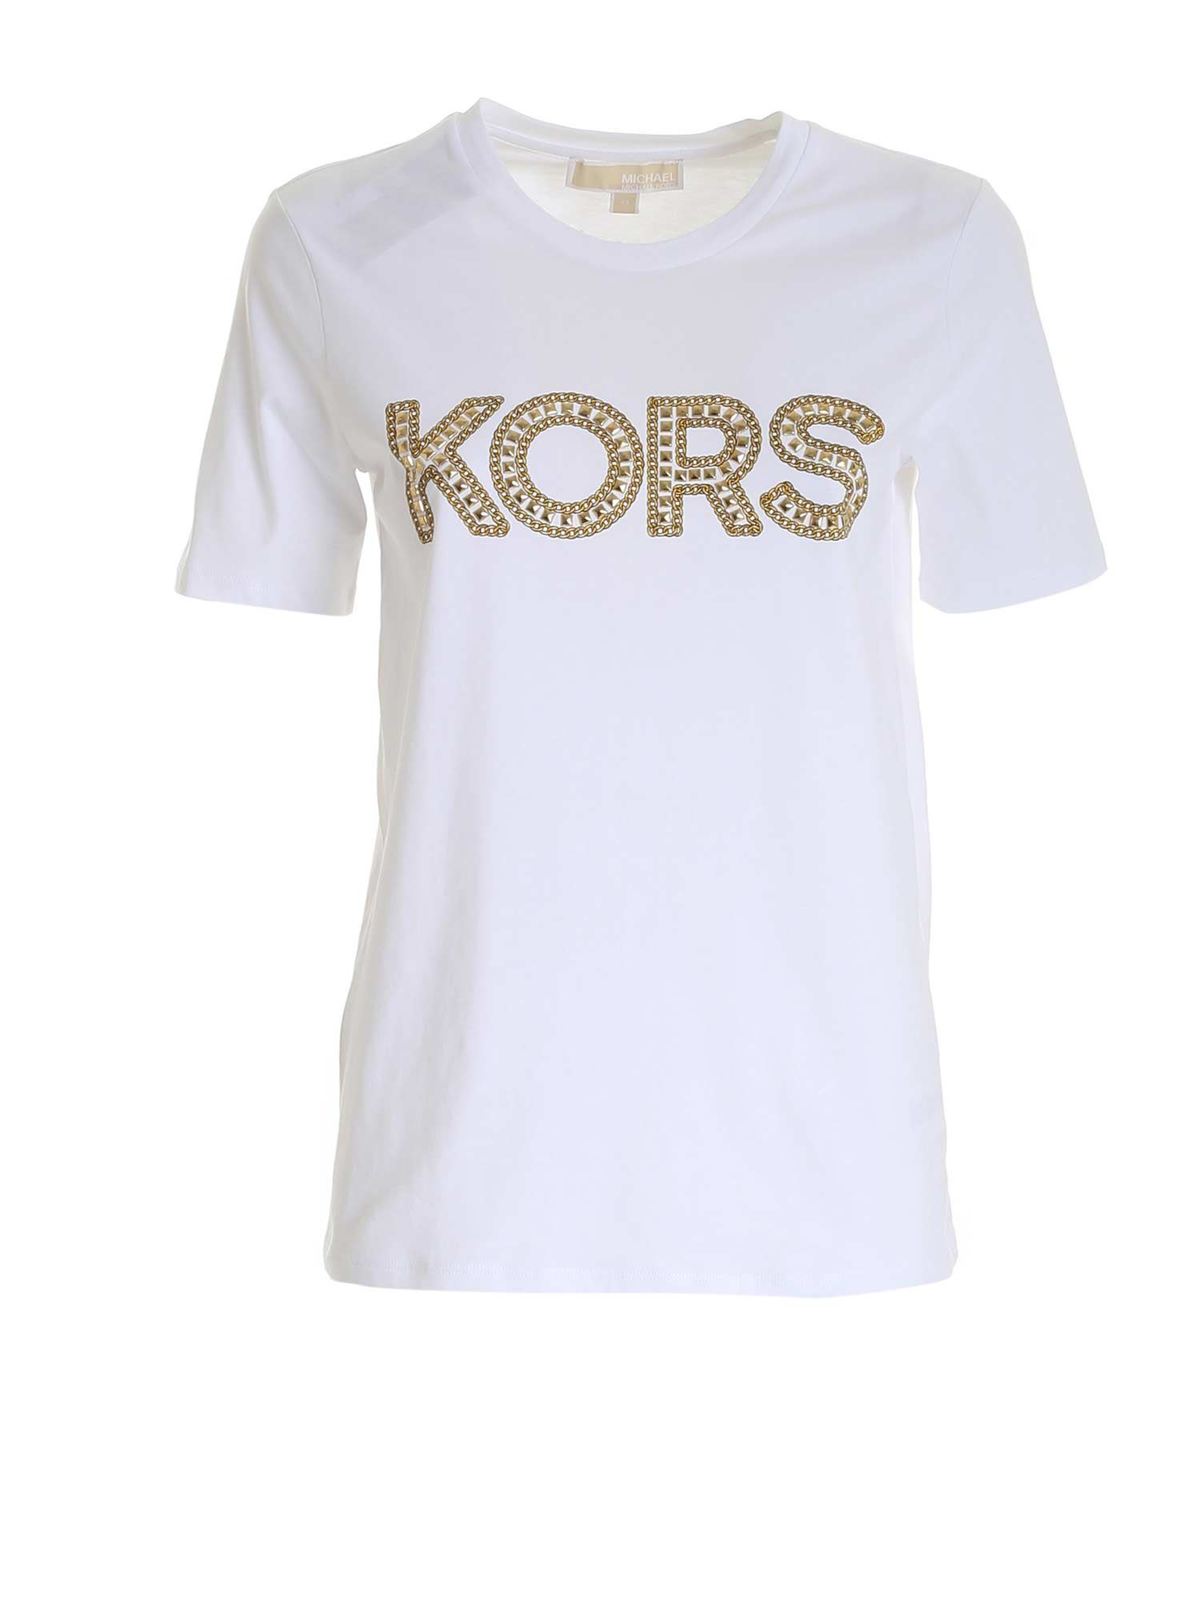 Michael Kors Cottons KORS LOGO T-SHIRT IN WHITE